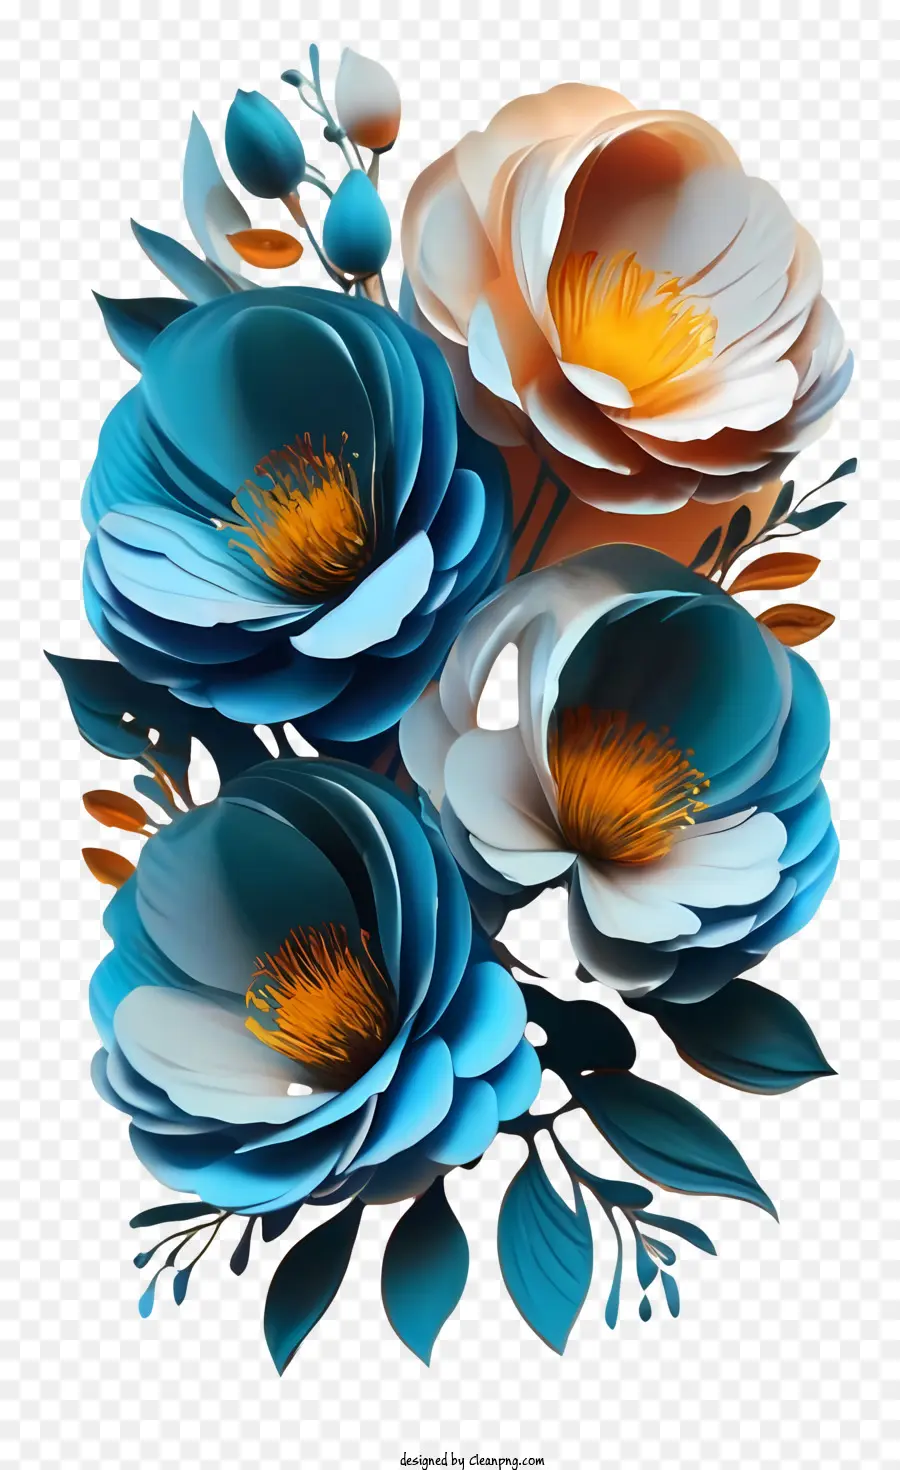 Blumenstrauß - Realistische 3D -Papierblumenanordnung mit Vase